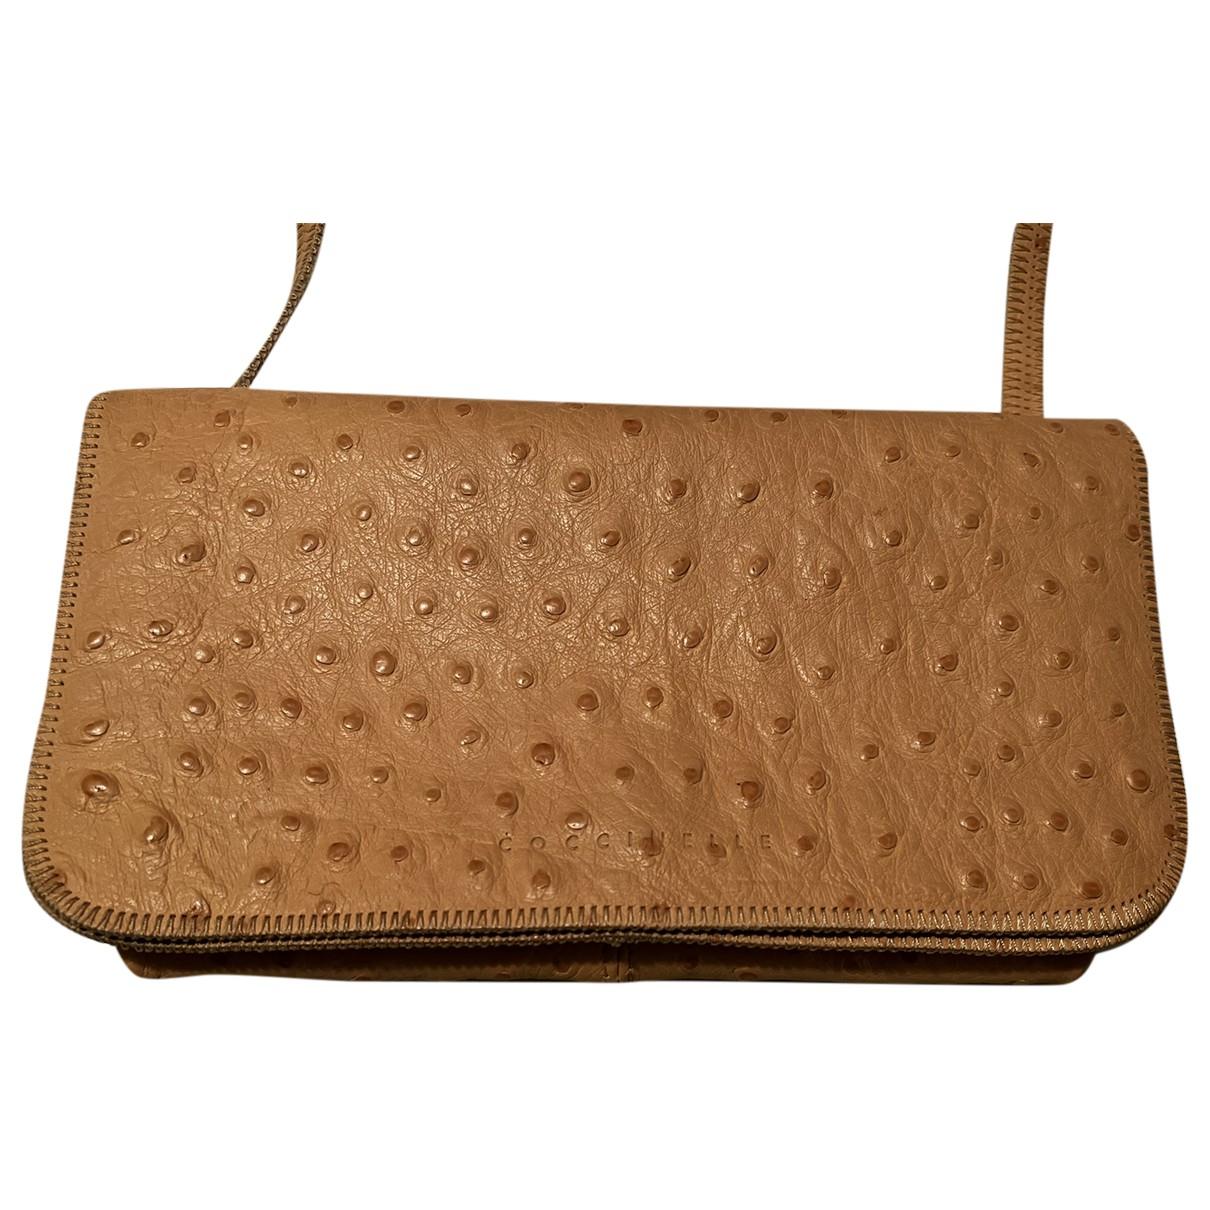 Ostrich handbag Coccinelle